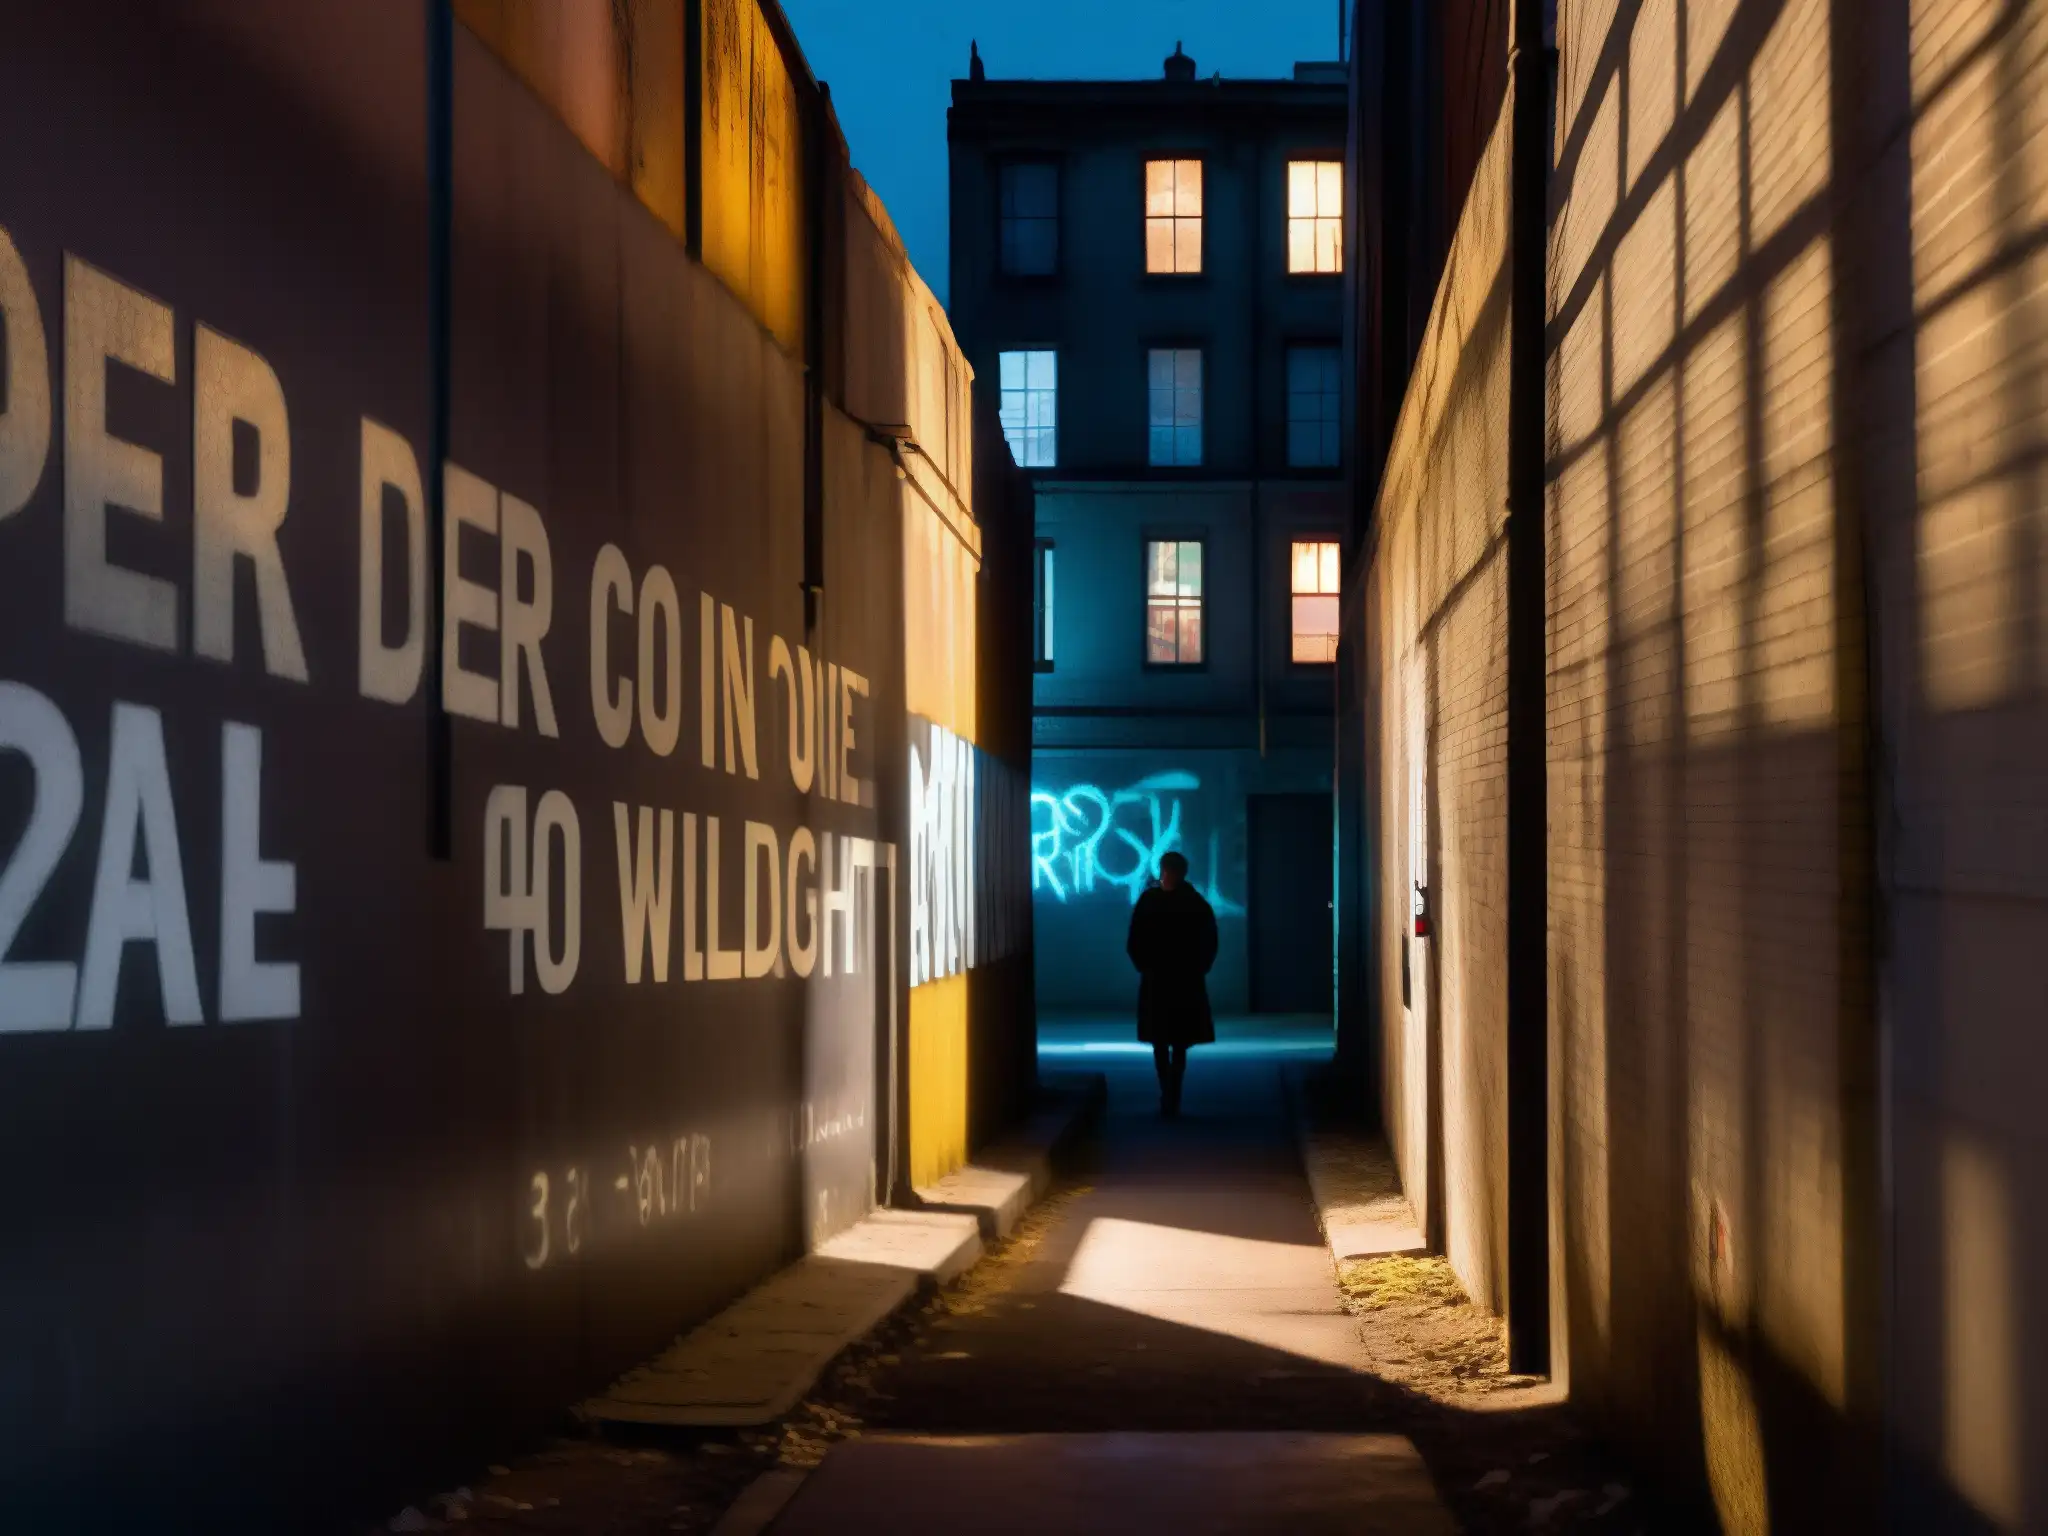 Alley sombrío de noche con figura solitaria y paredes graffiteadas